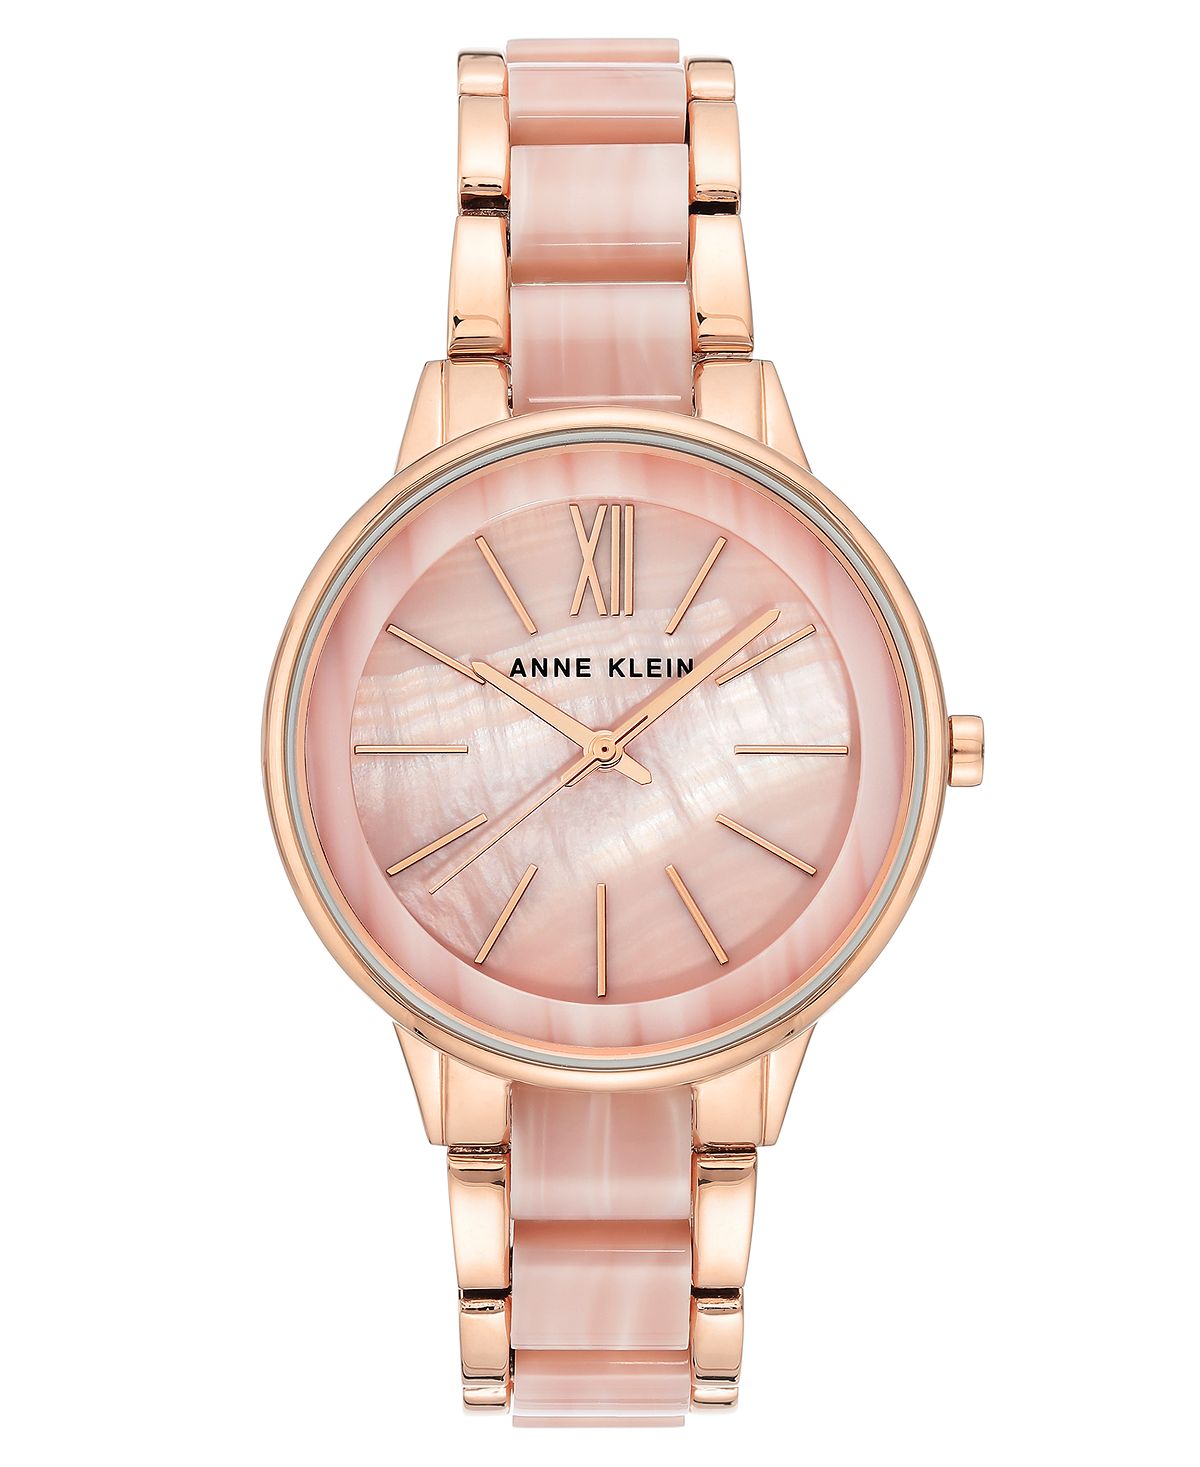 Женские часы с акриловым браслетом цвета розового золота и розового мрамора, 37 мм Anne Klein, золотой